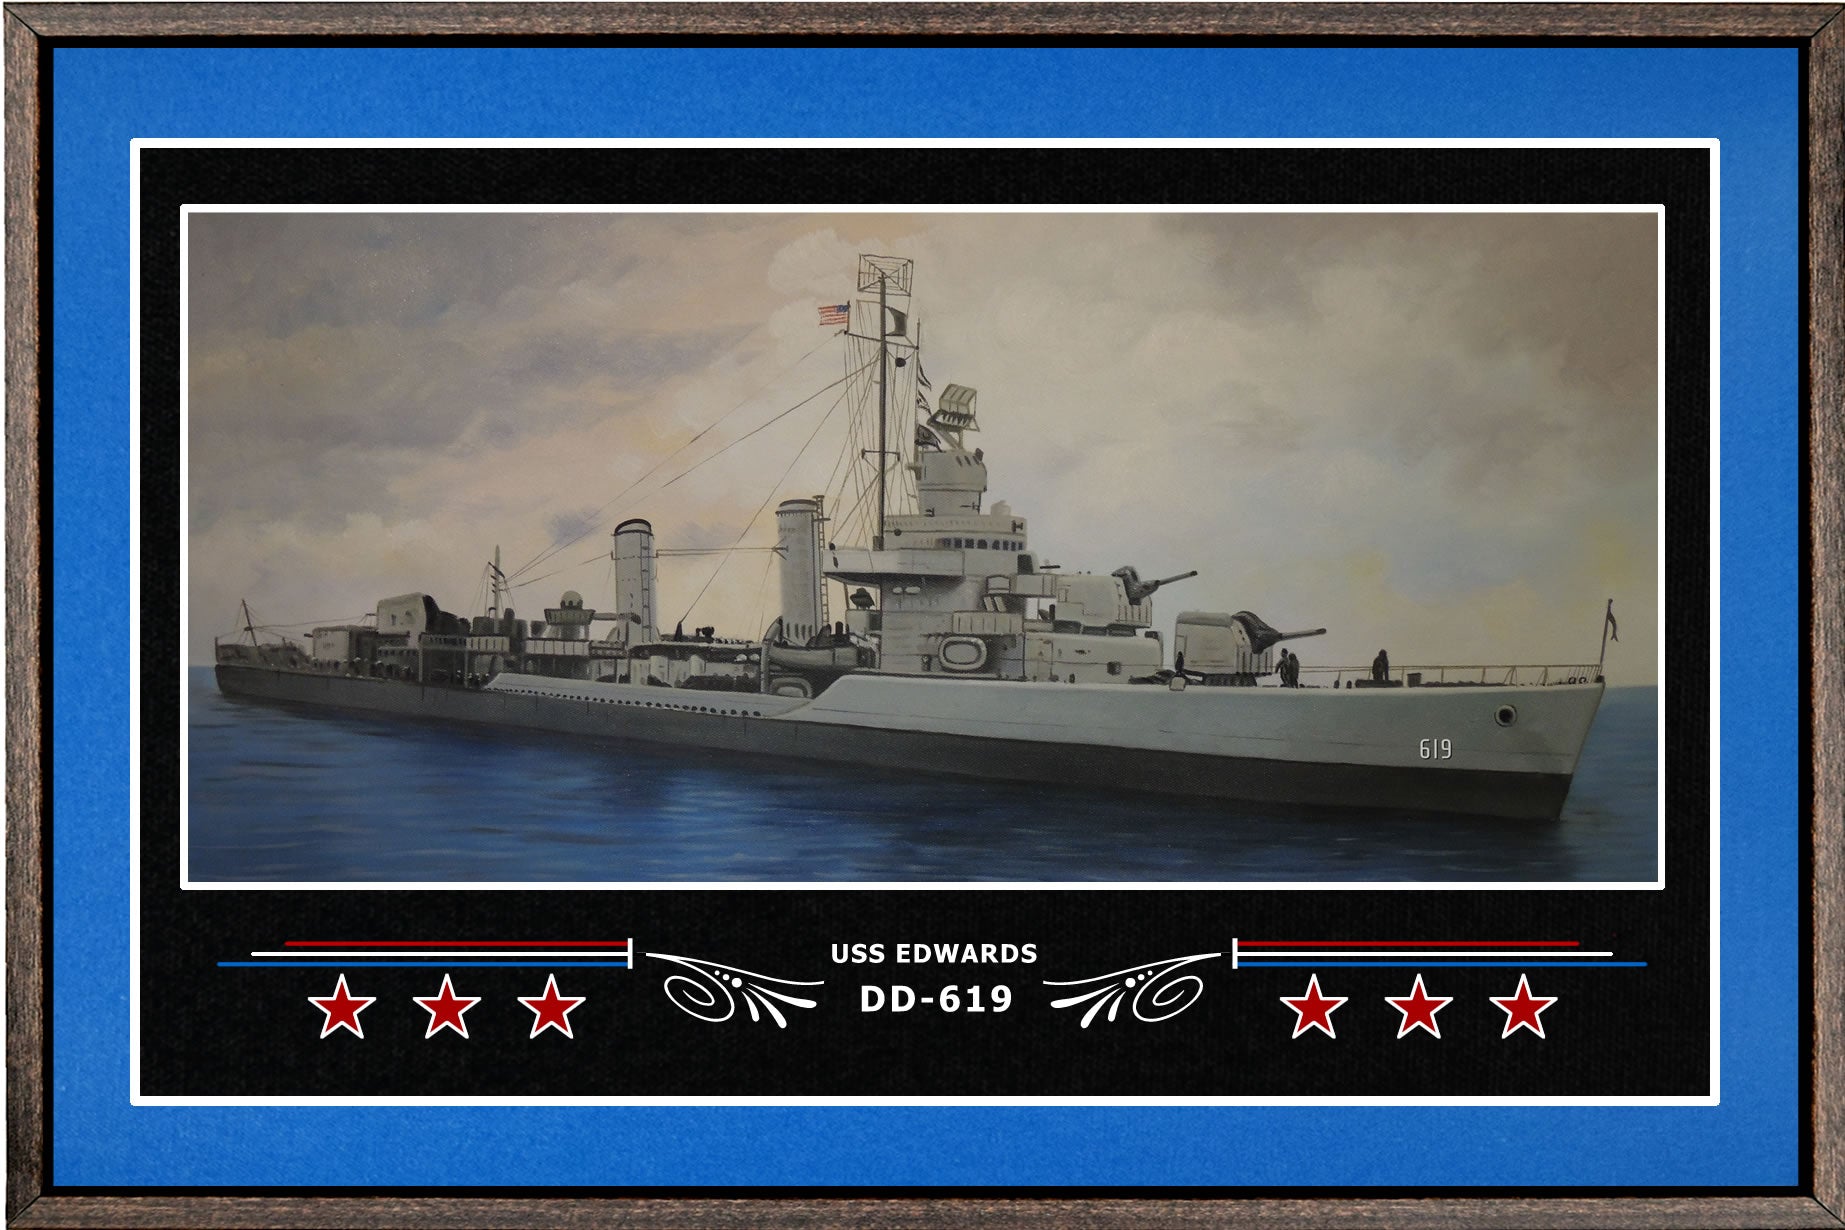 USS EDWARDS DD 619 BOX FRAMED CANVAS ART BLUE